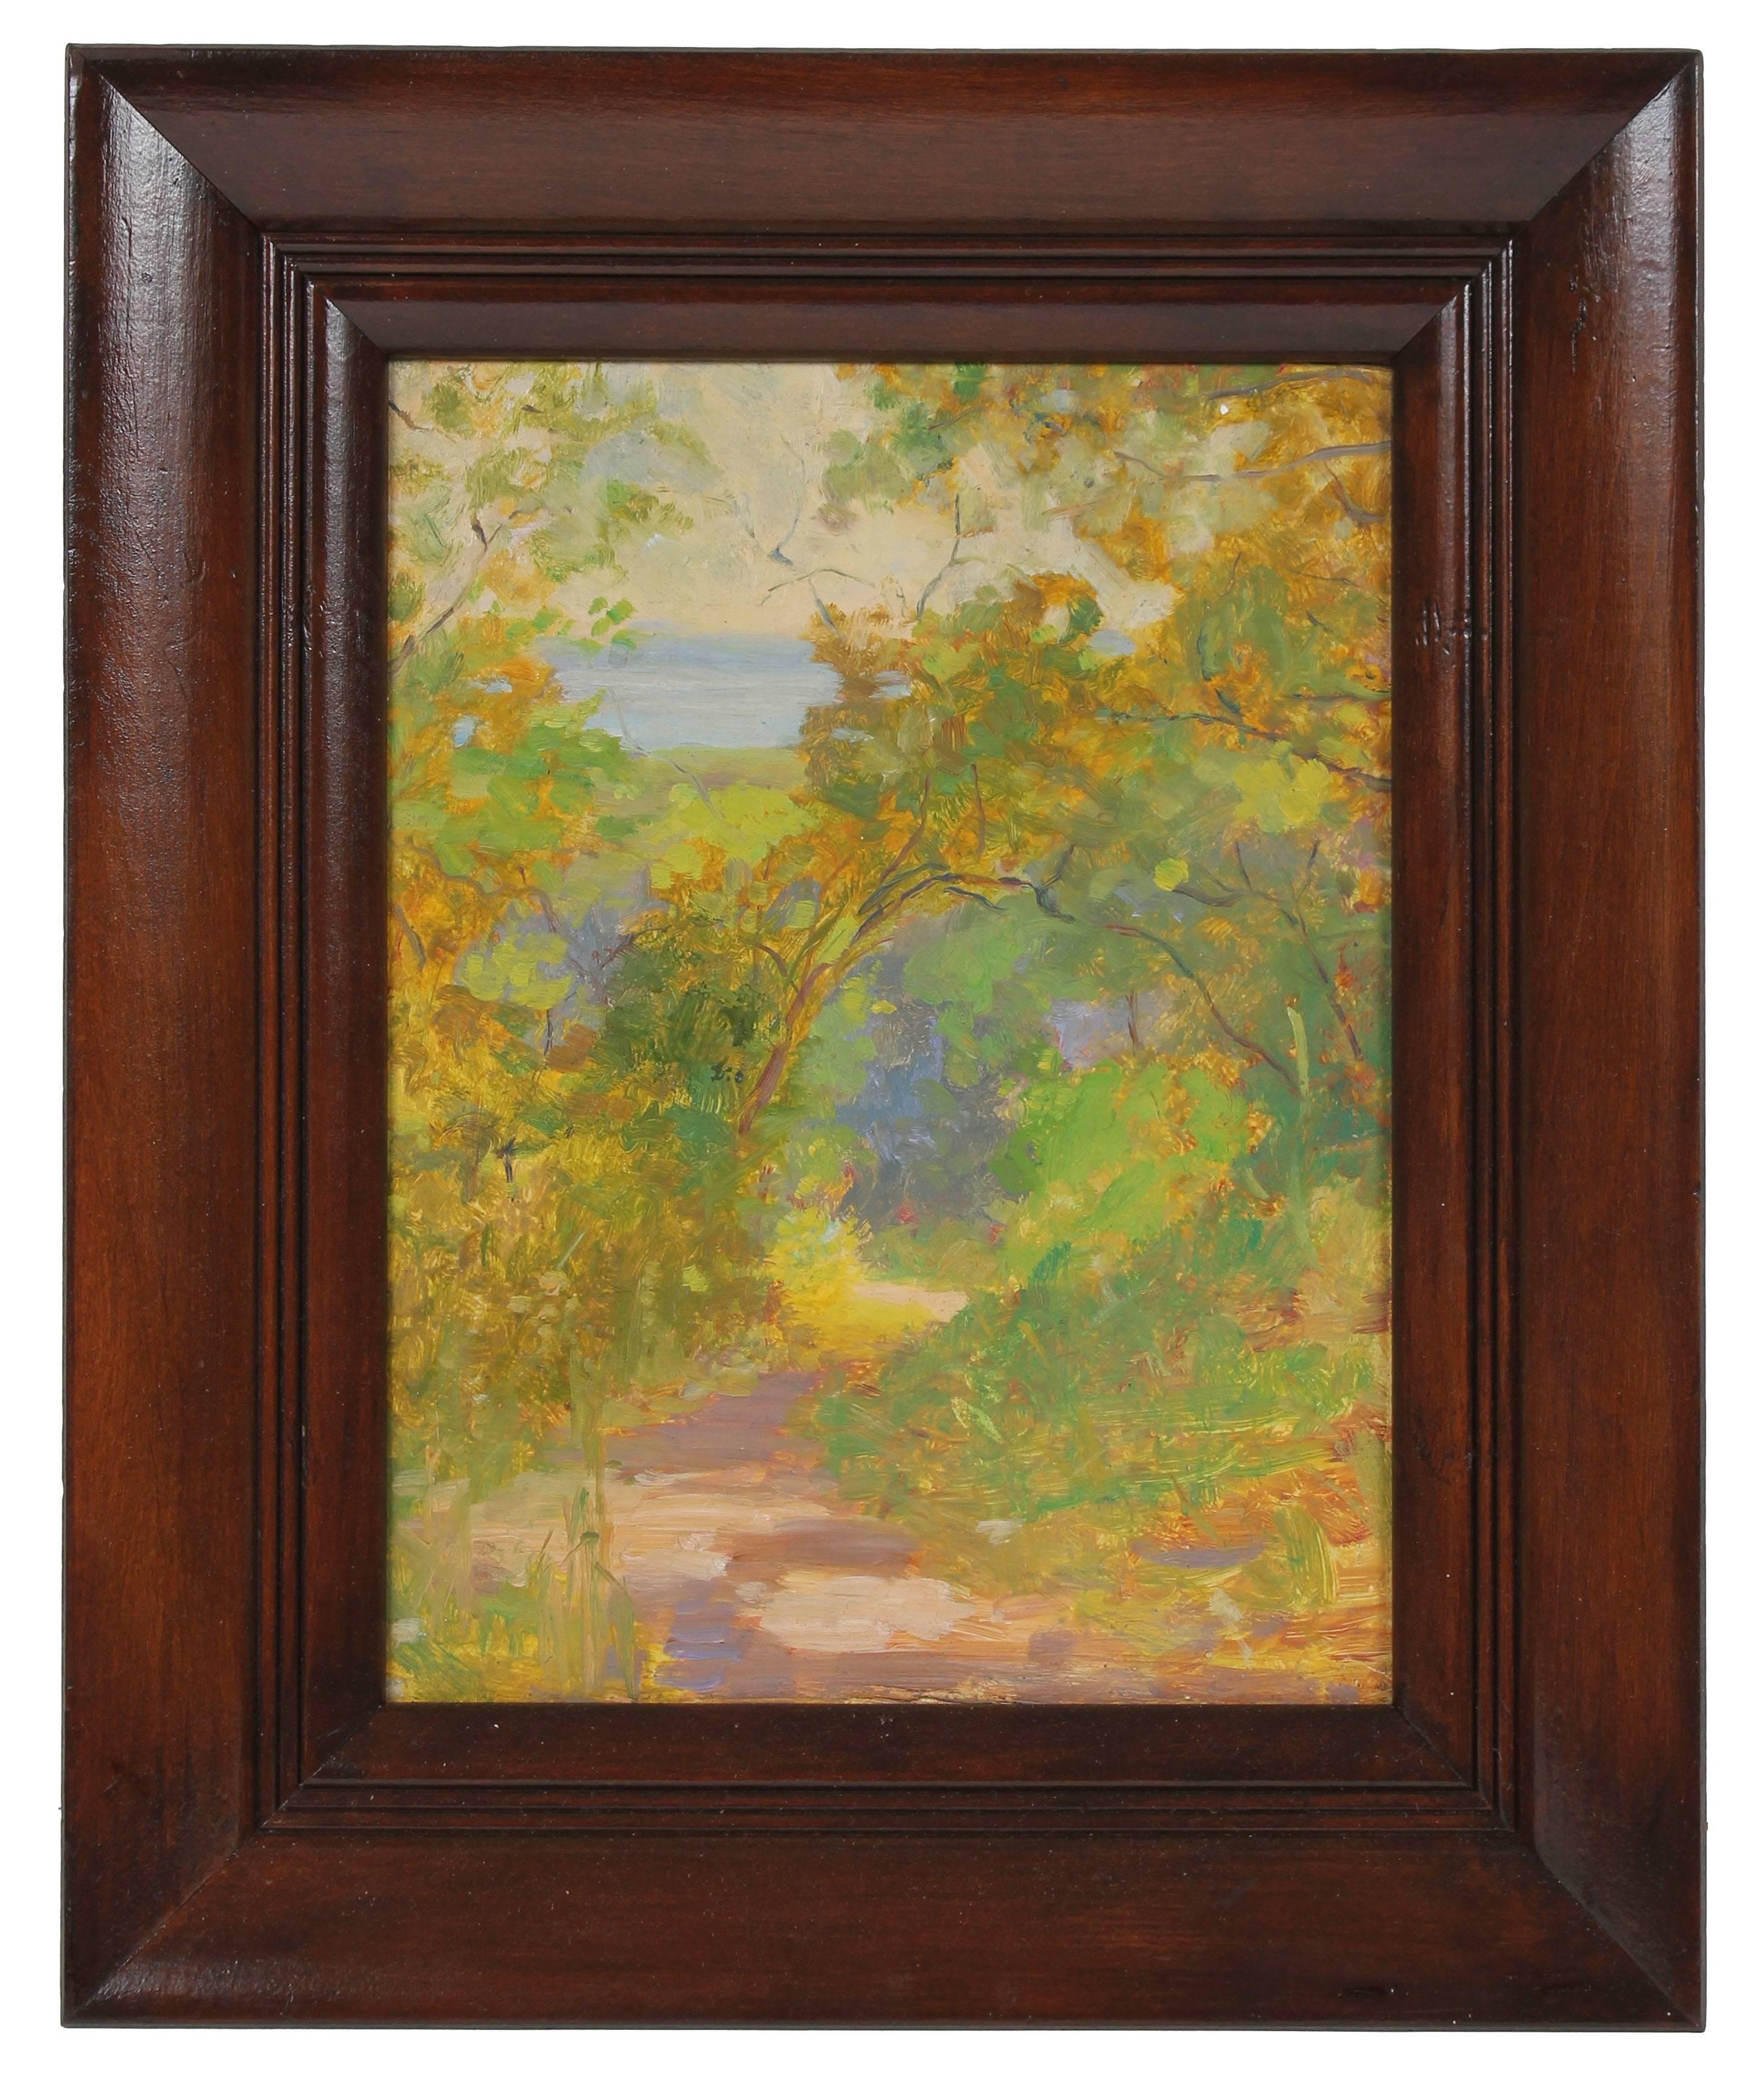 Duncan Davidson Landscape Painting - Impressionist Forest Landscape, Oil Painting, Circa 1920s